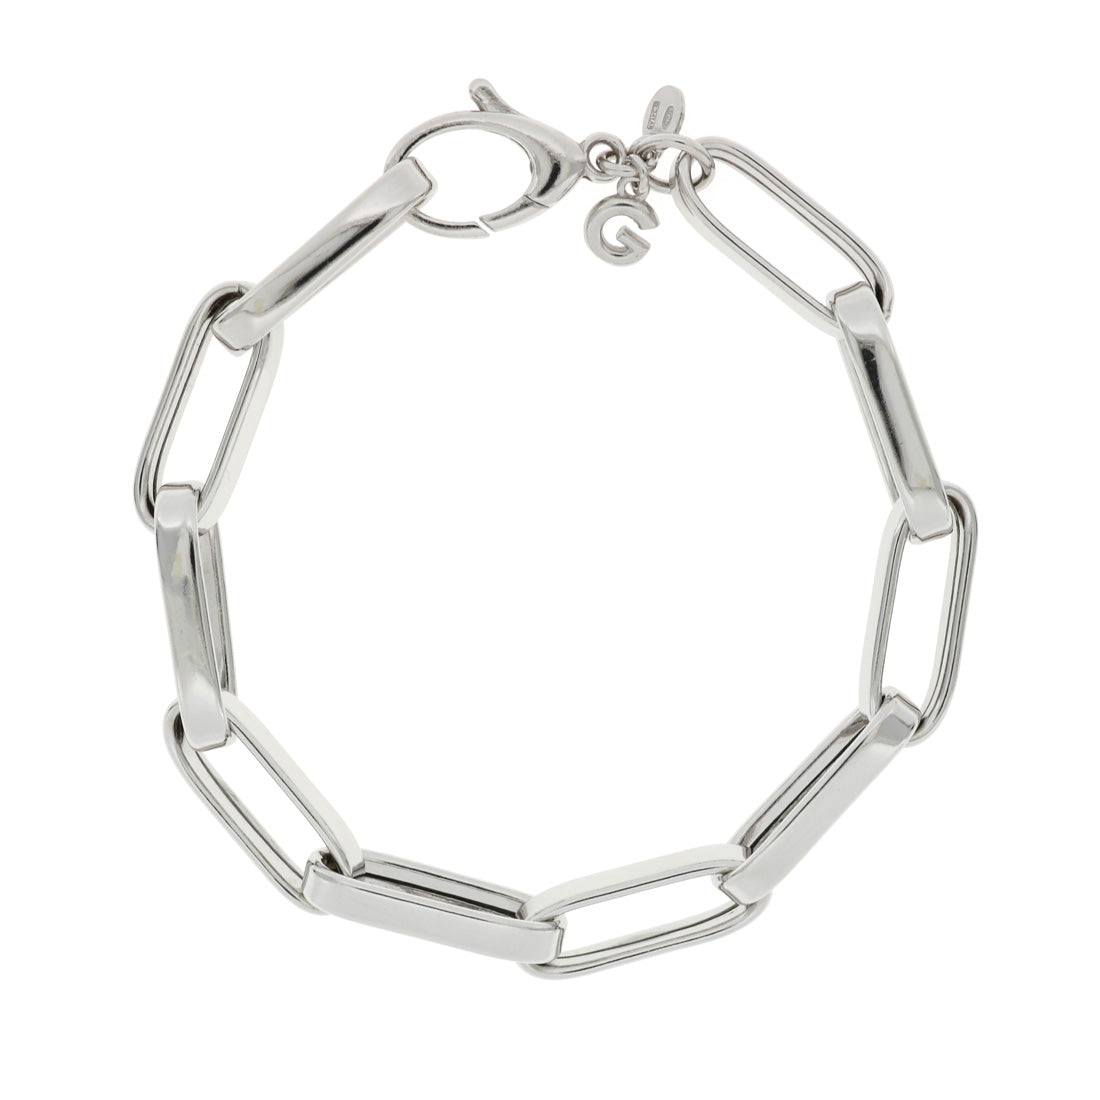 Bracciale catena argento visto chiuso per intero, realizzato con maglie rettangolari allungate